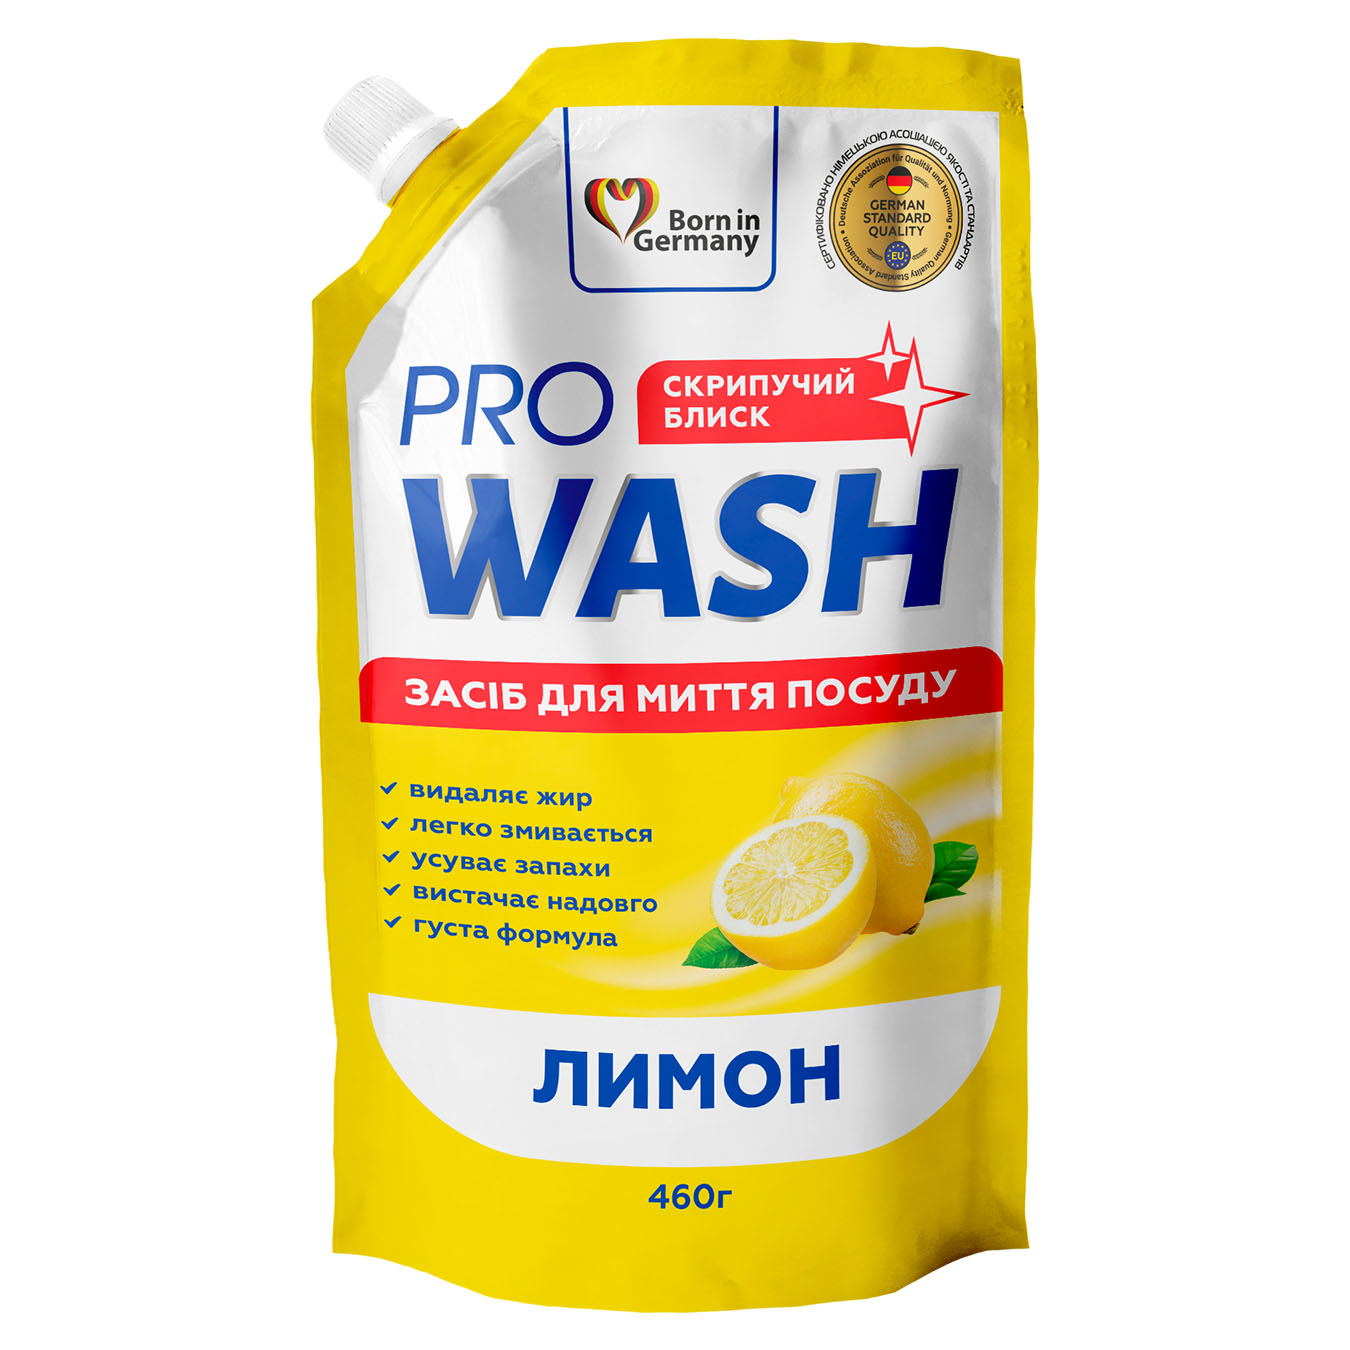 Dishwashing liquid Pro Wash Lemon 460ml single pack